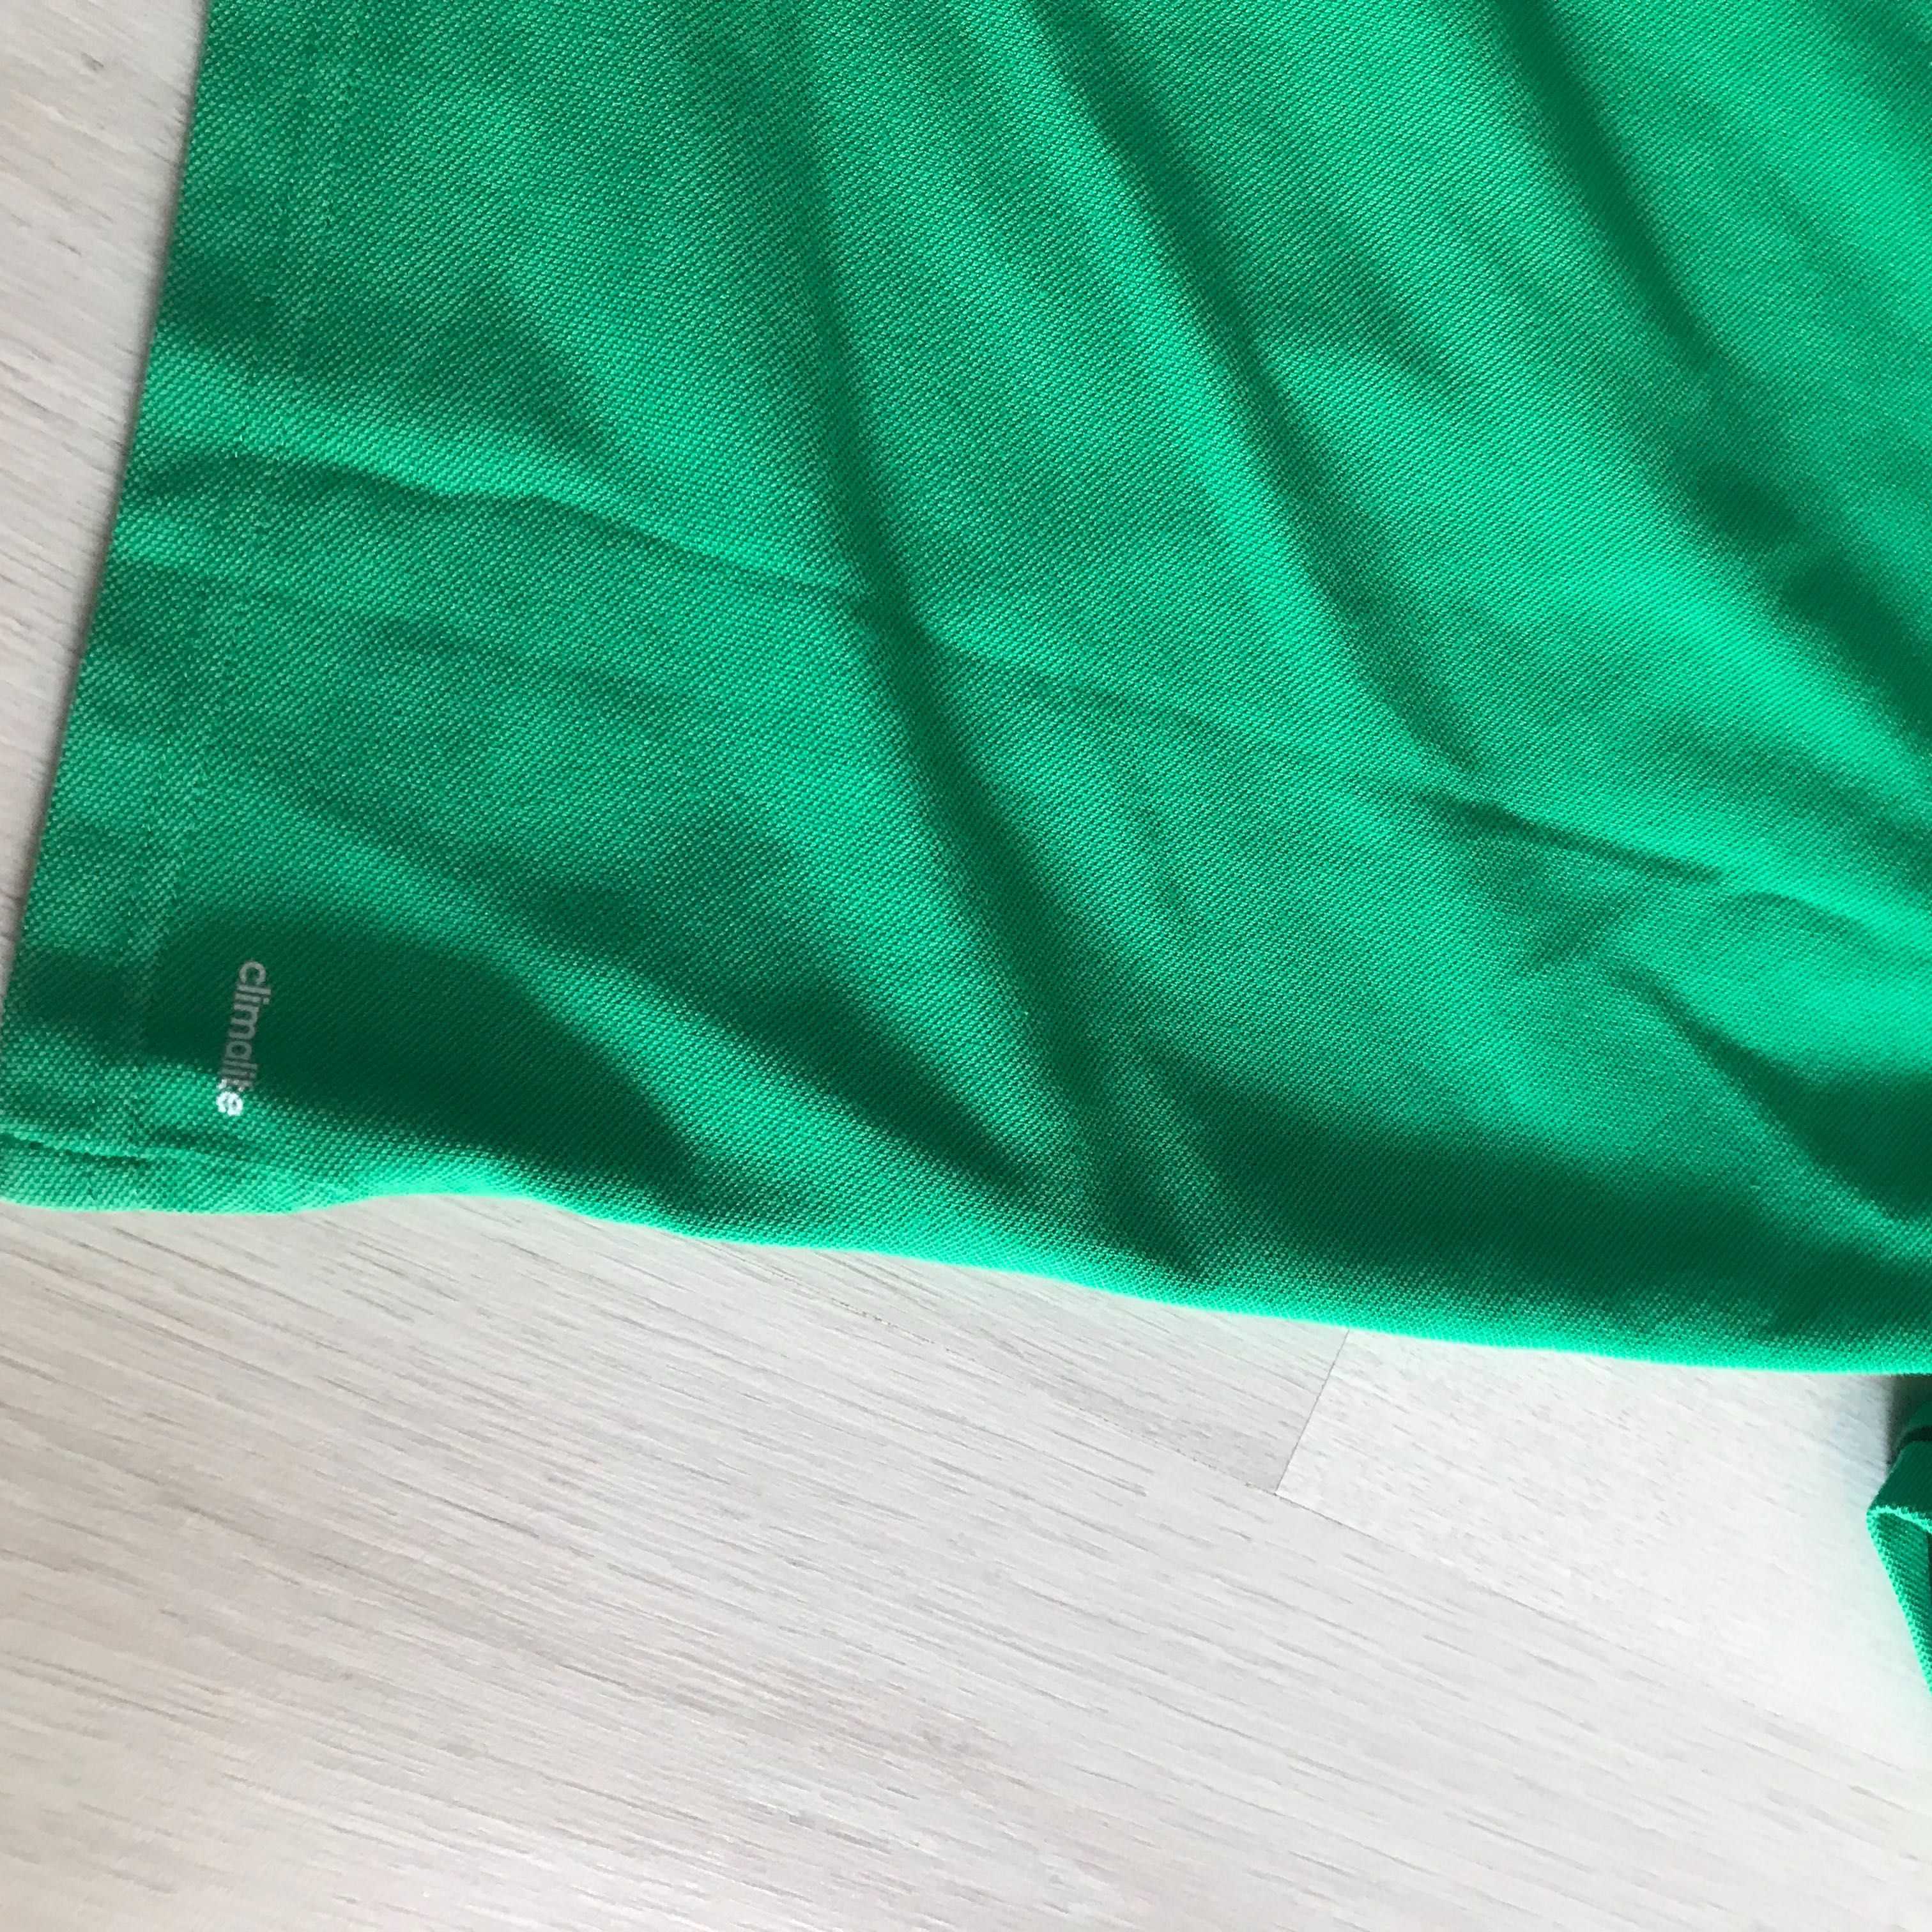 Adidas koszulka "polo" sportowa r.152 zielona